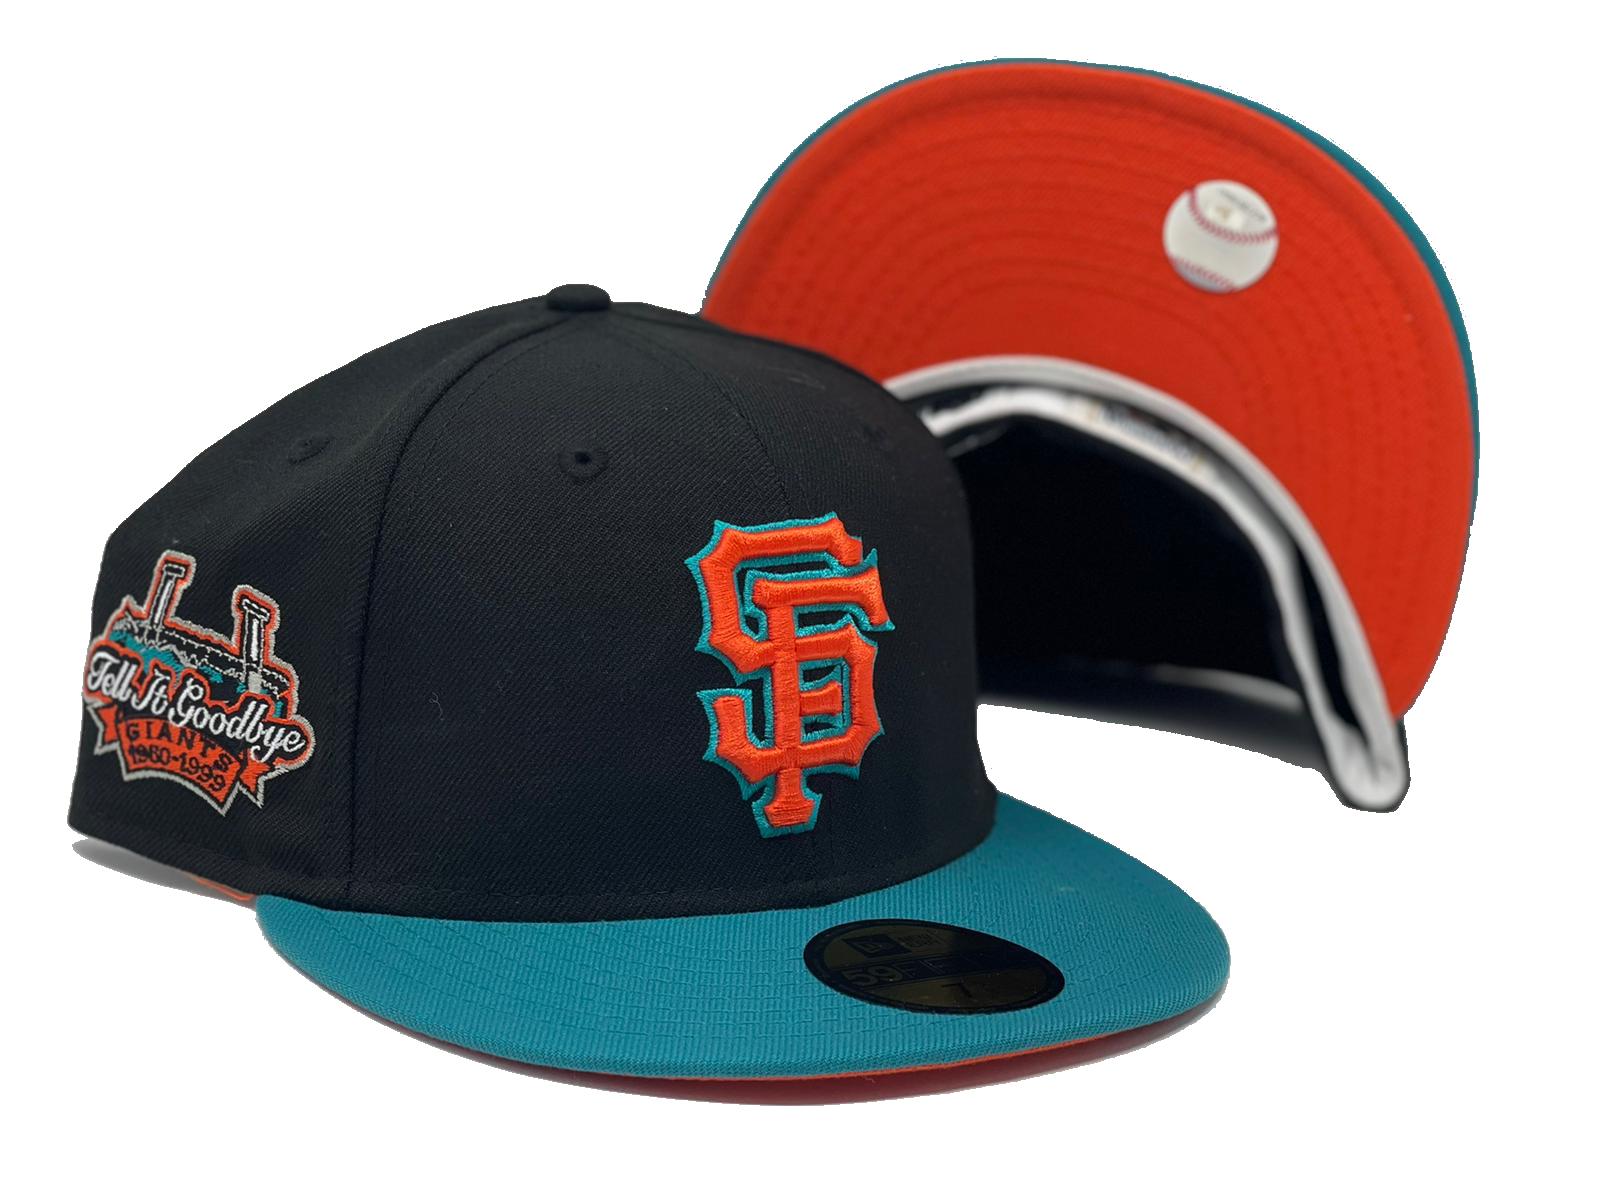 New Era San Francisco Giants Orange Team AKA 59FIFTY Fitted Hat